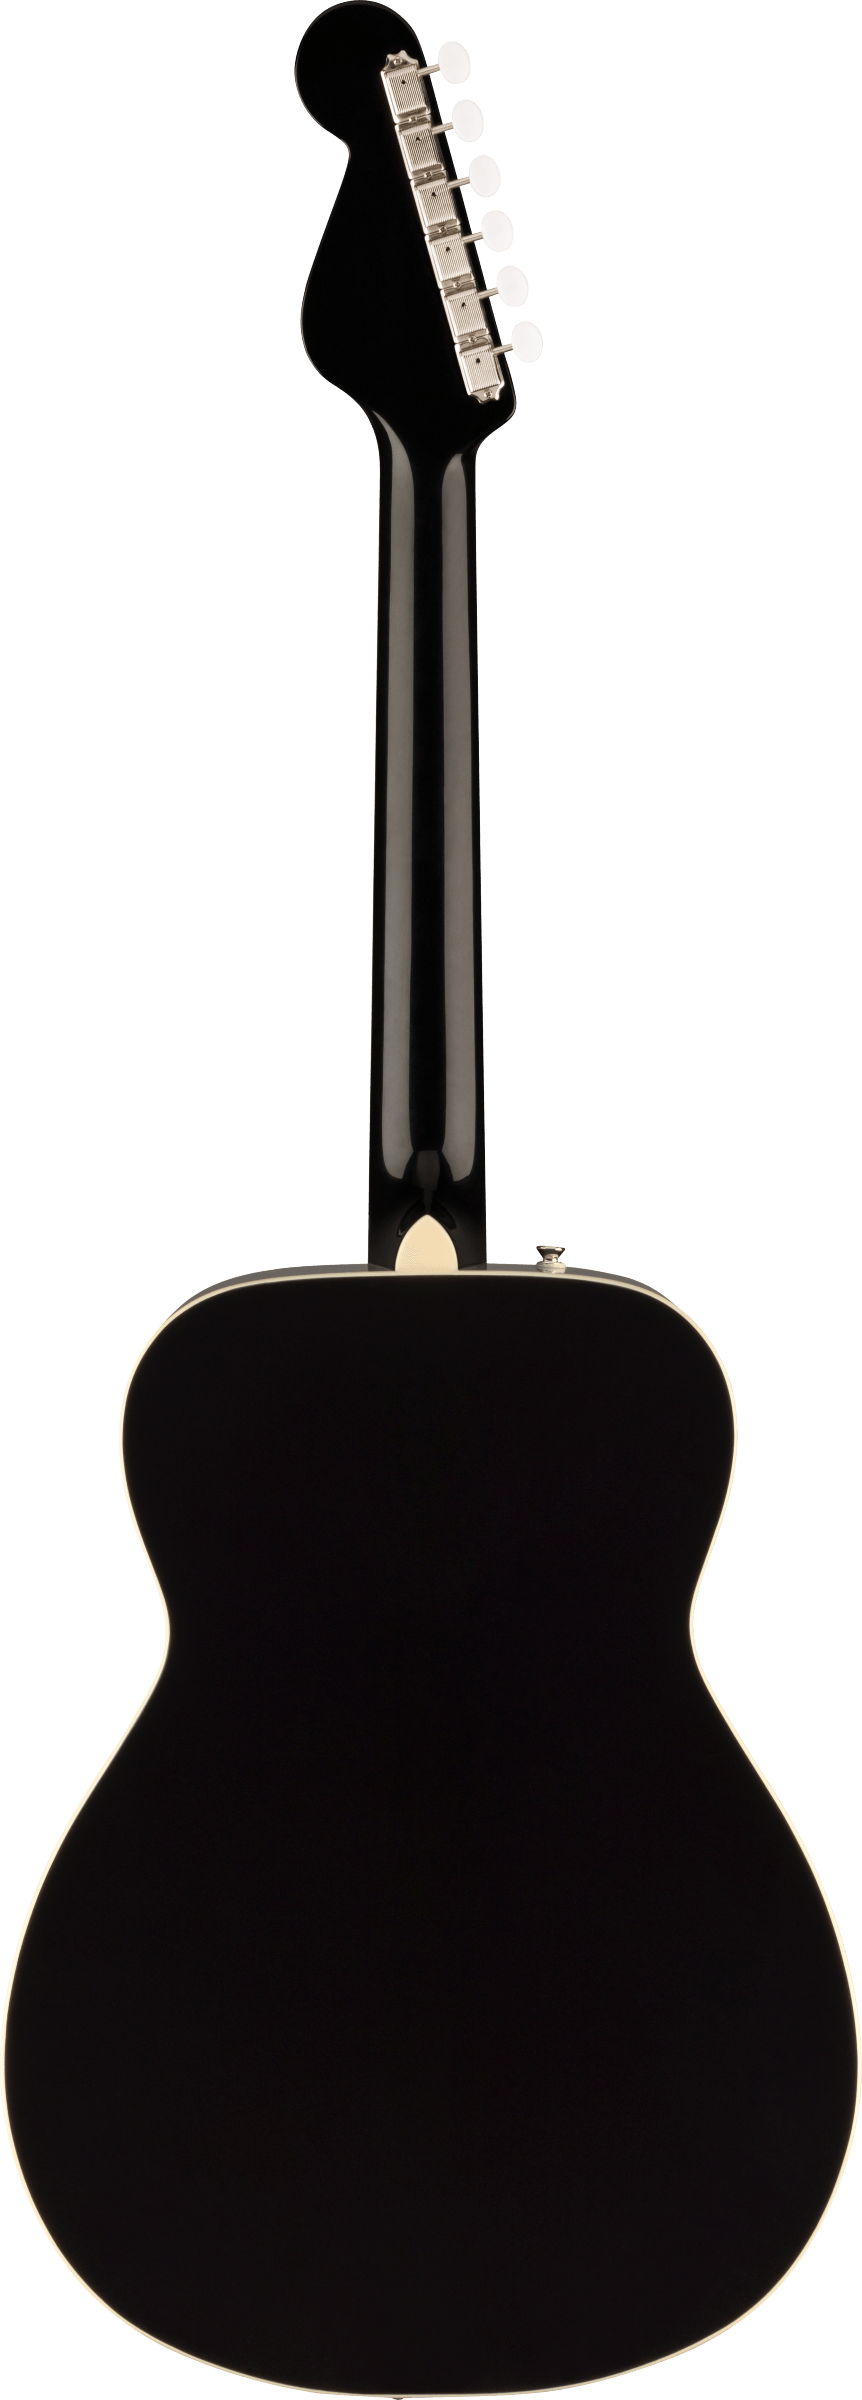 Back of Fender Malibu Vintage Ovangkol Fingerboard Gold Pickguard Black.